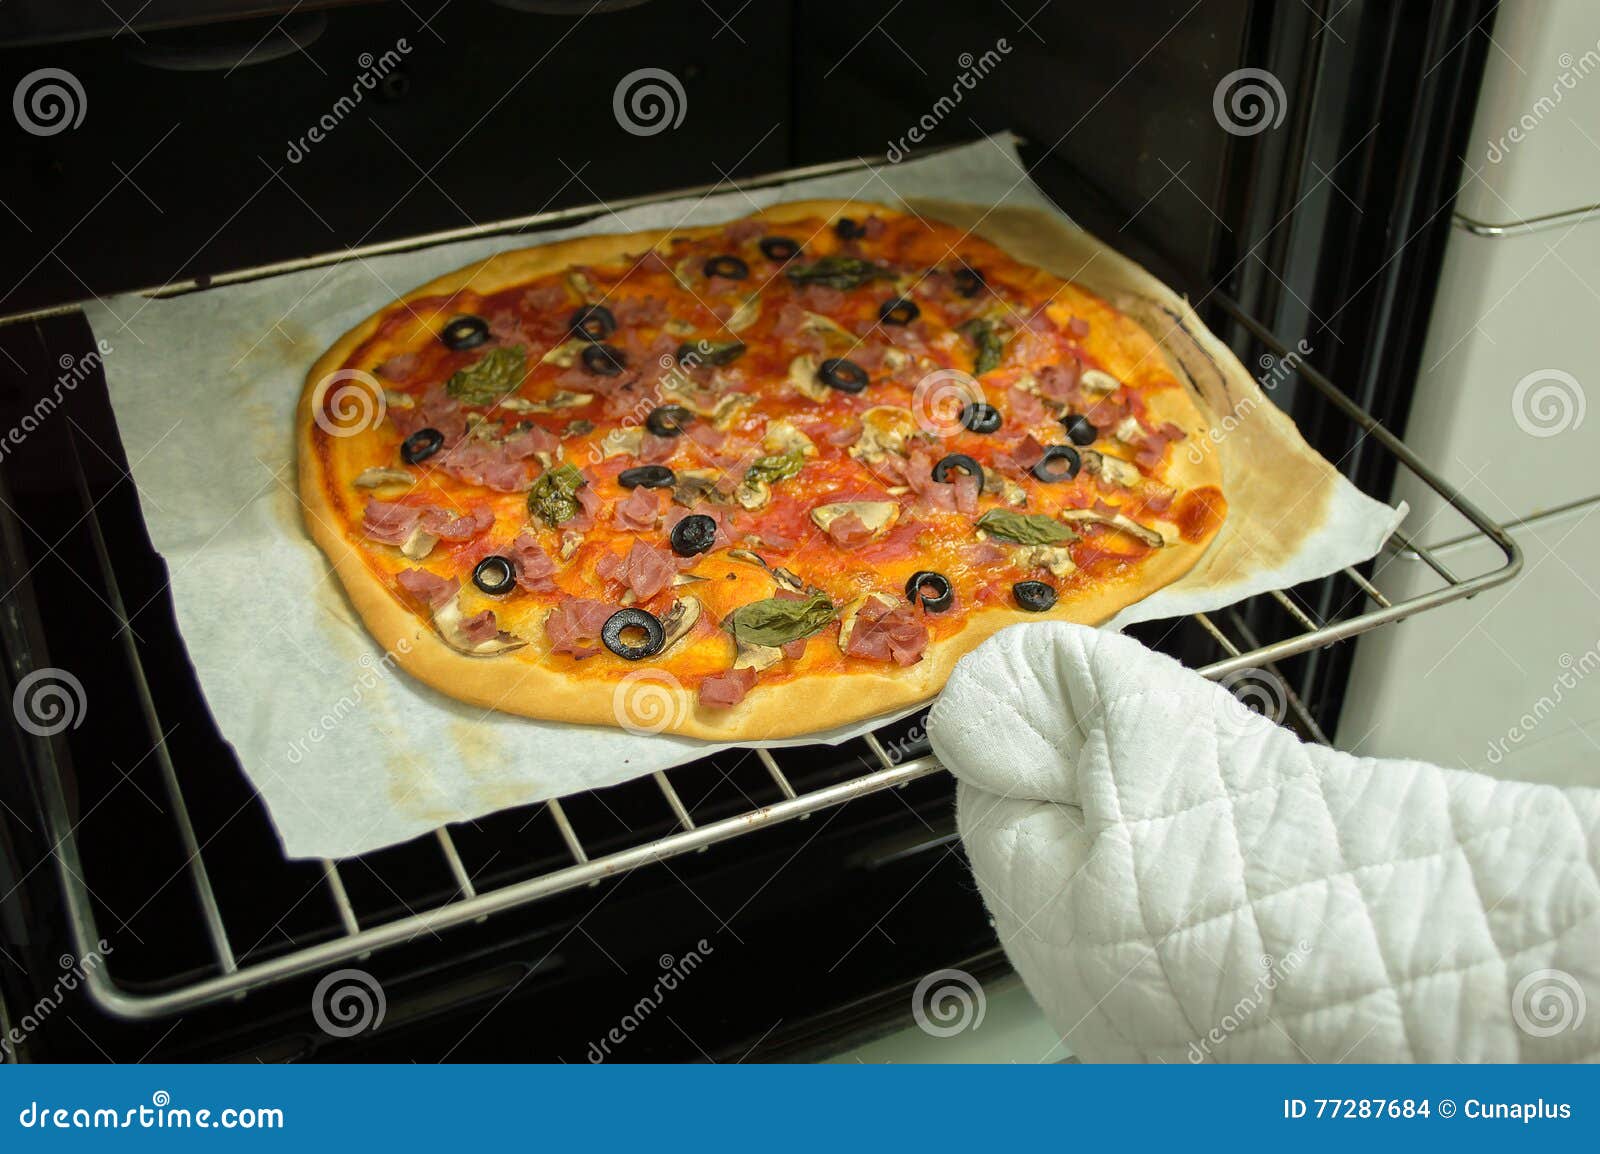 что делать если пицца засохла в духовке фото 10